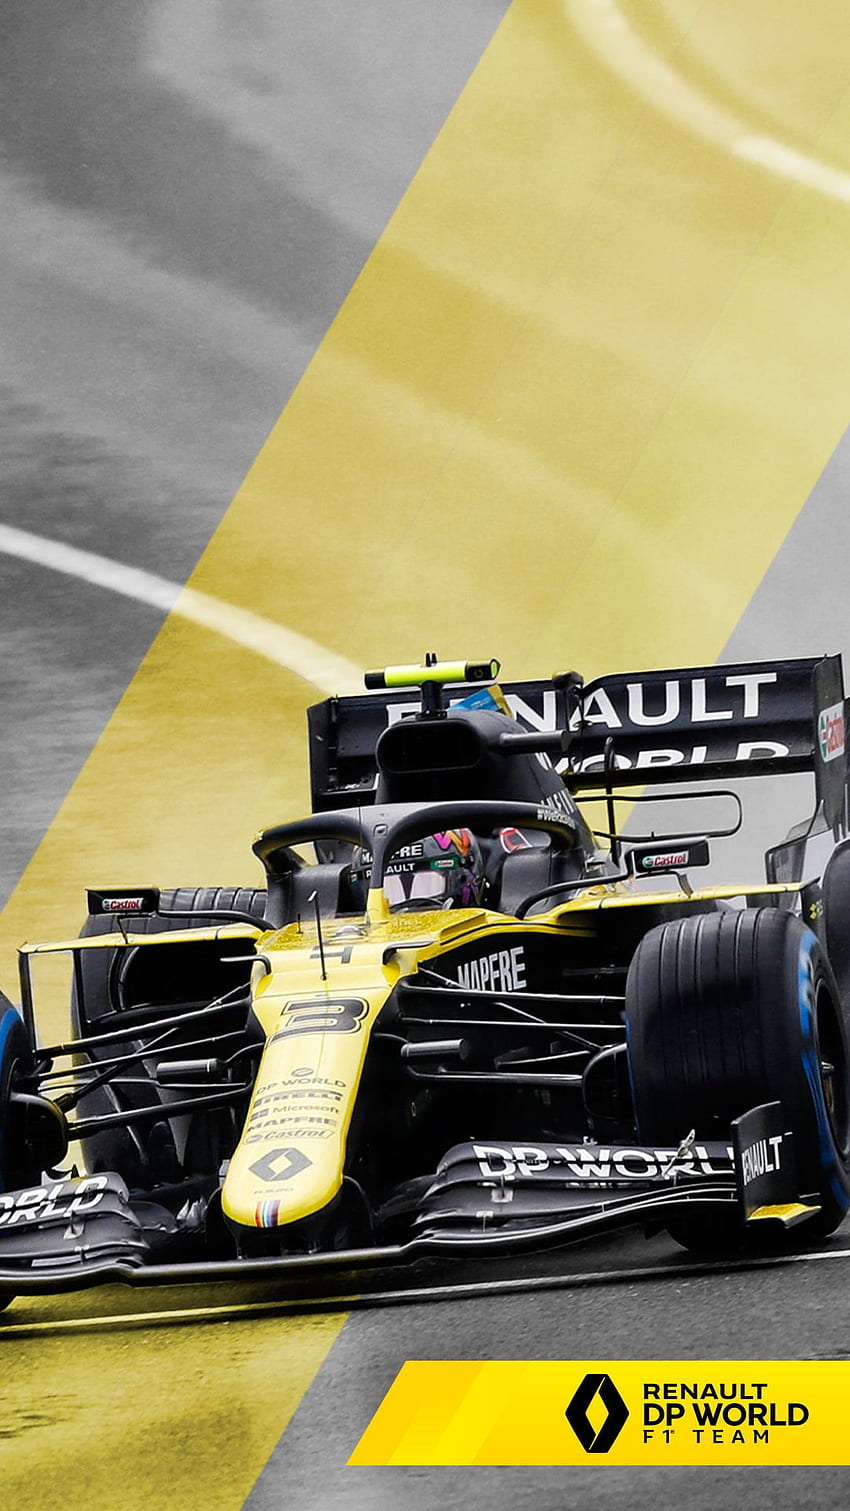 Renault F1 Team on Twitter. Renault formula 1, Renault, Formula 1 ...